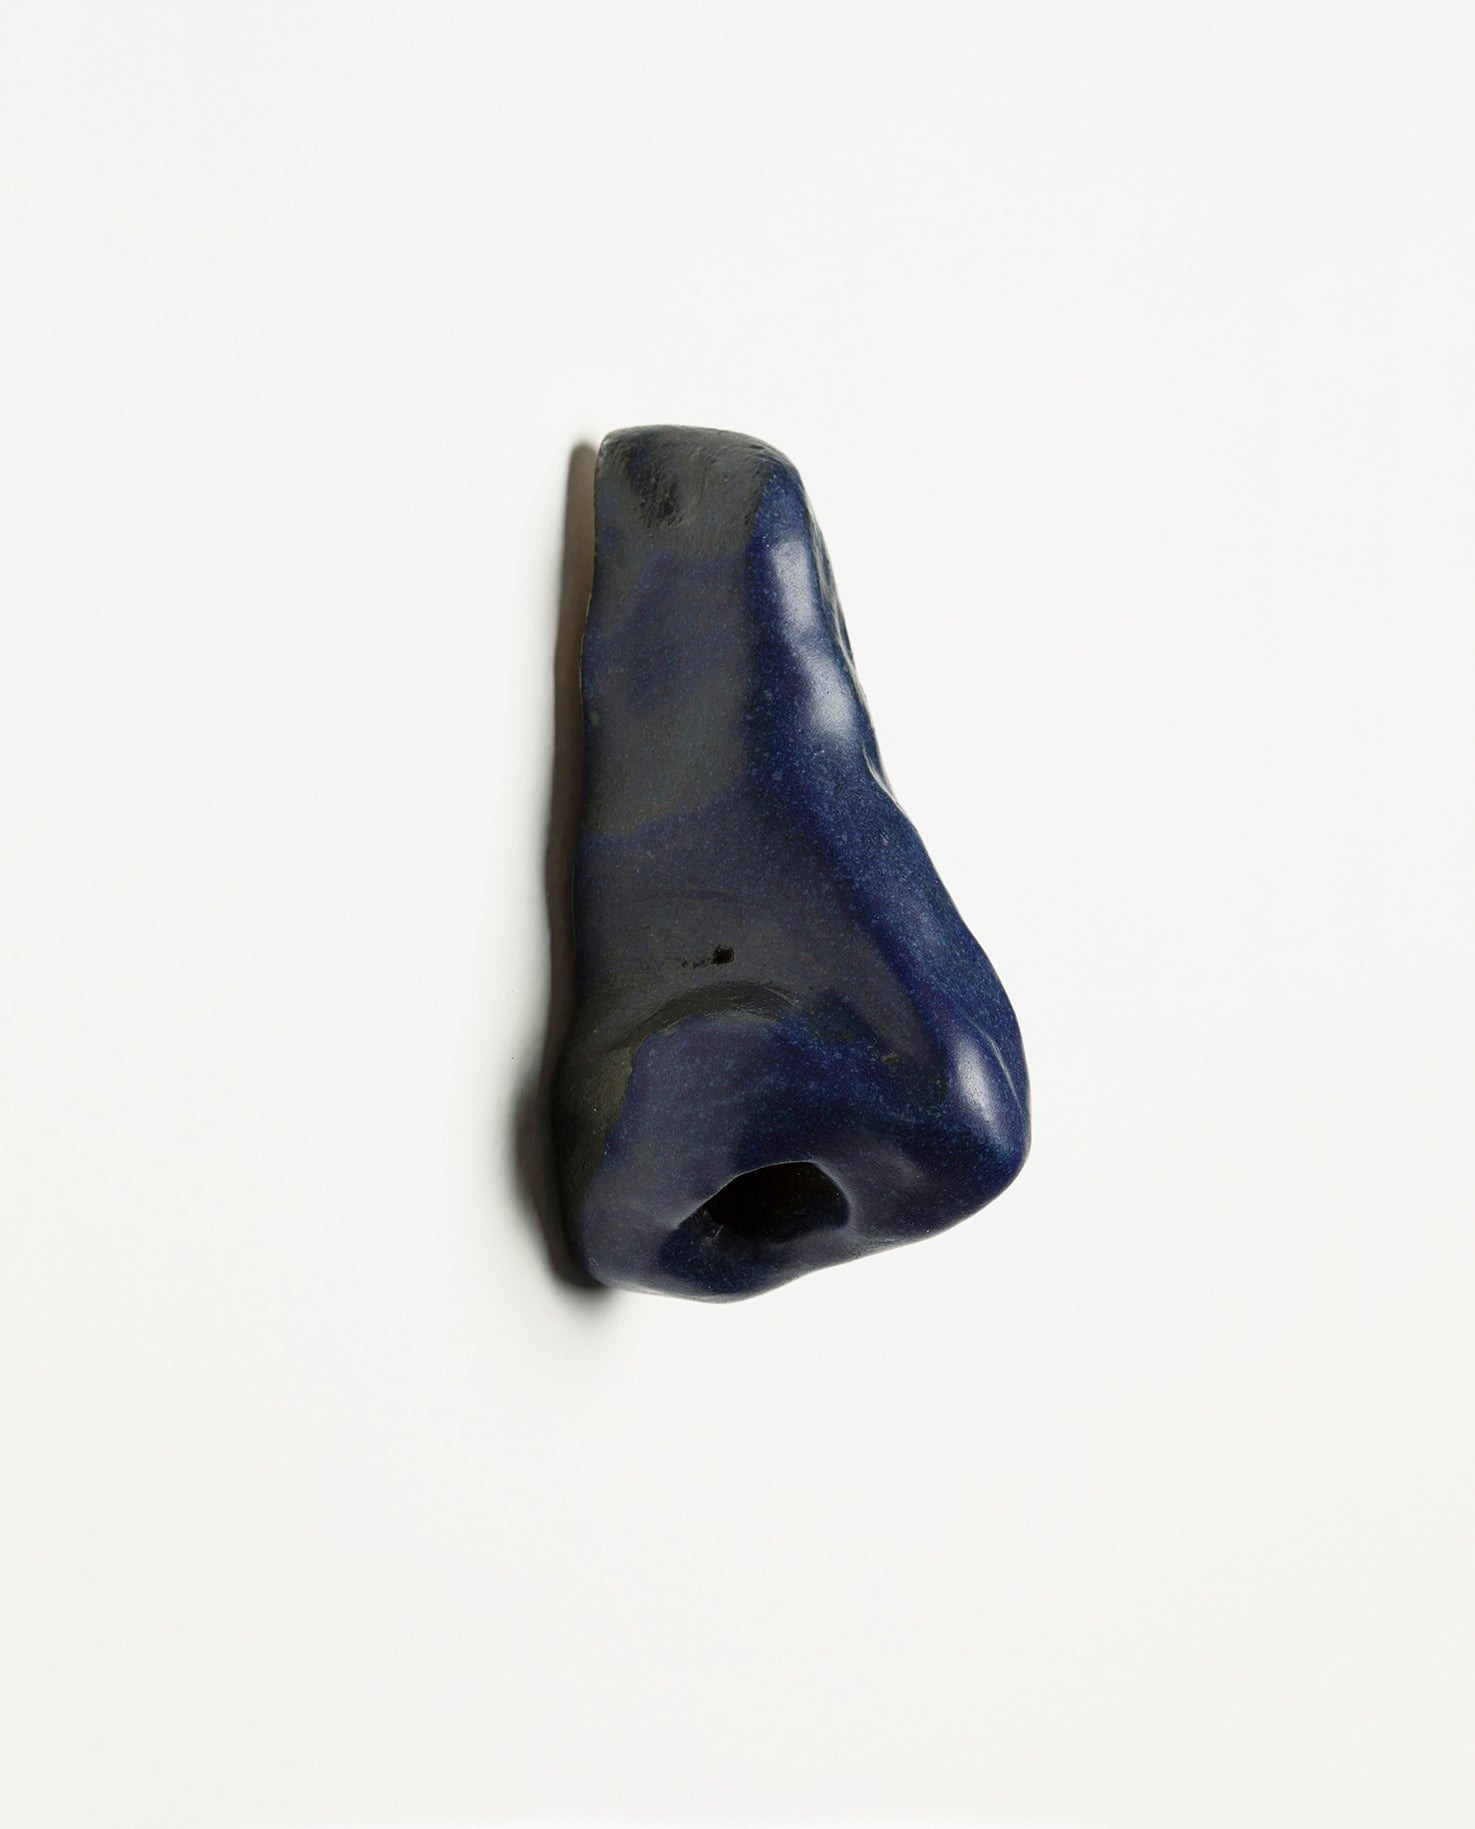 Nez en céramique émaillé de couleur bleu. Petite sculpture en grès. Unique.